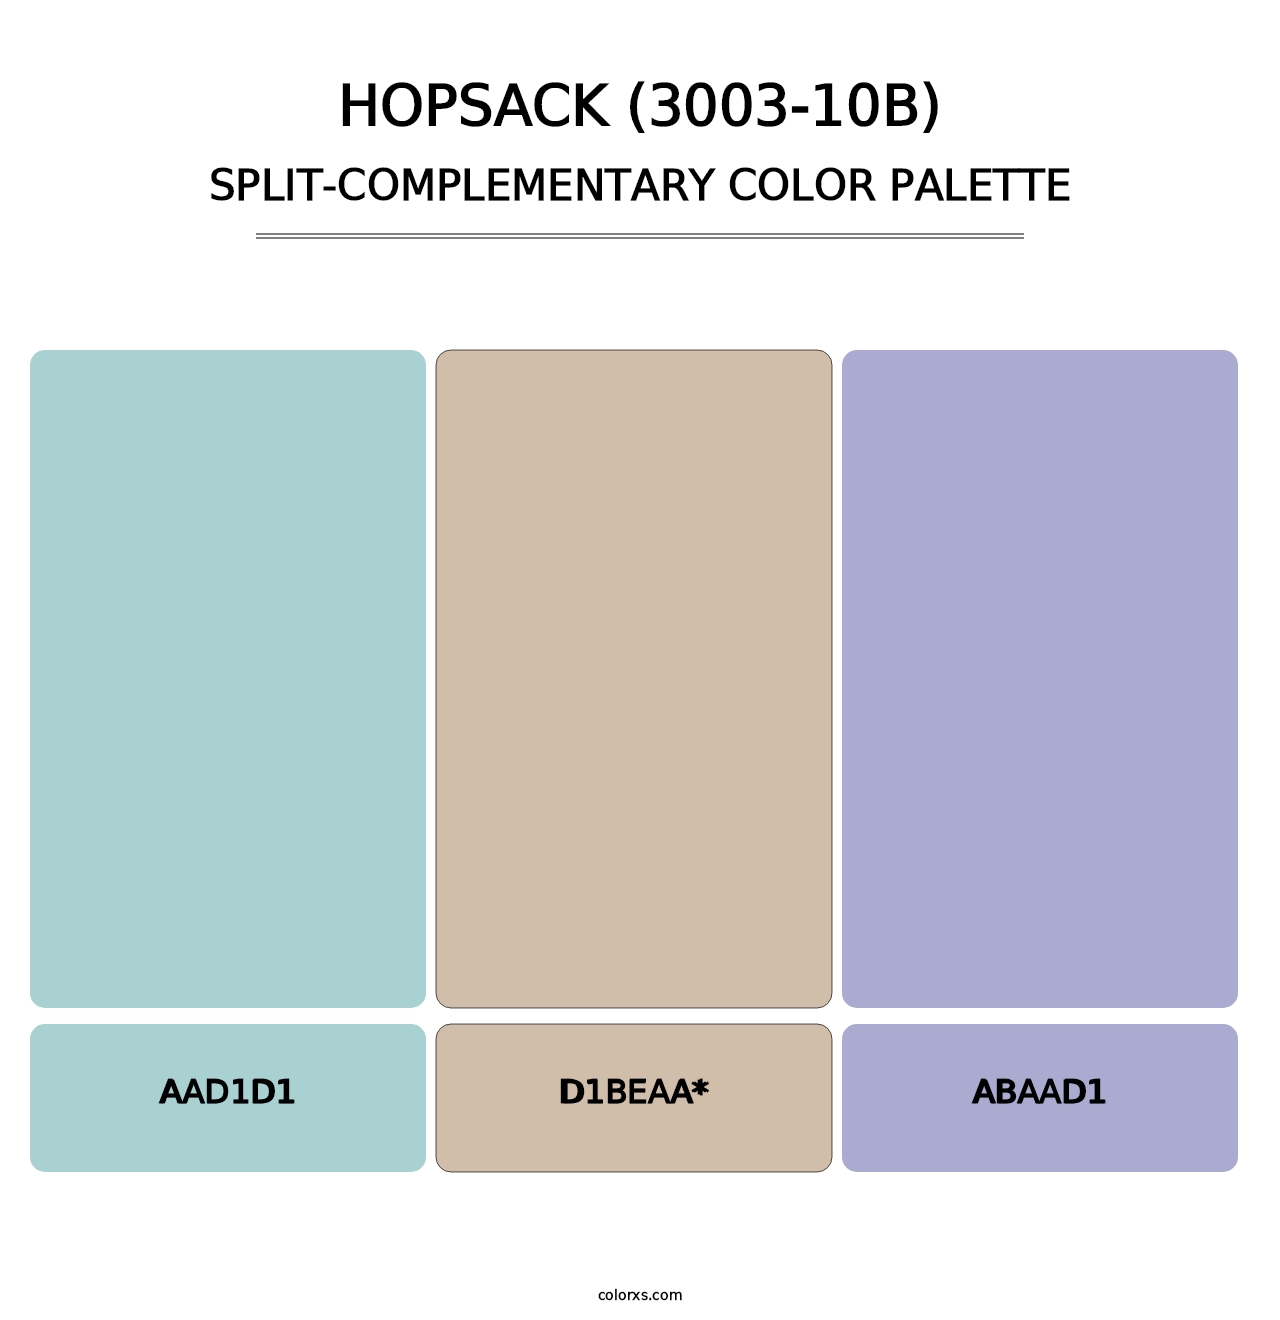 Hopsack (3003-10B) - Split-Complementary Color Palette